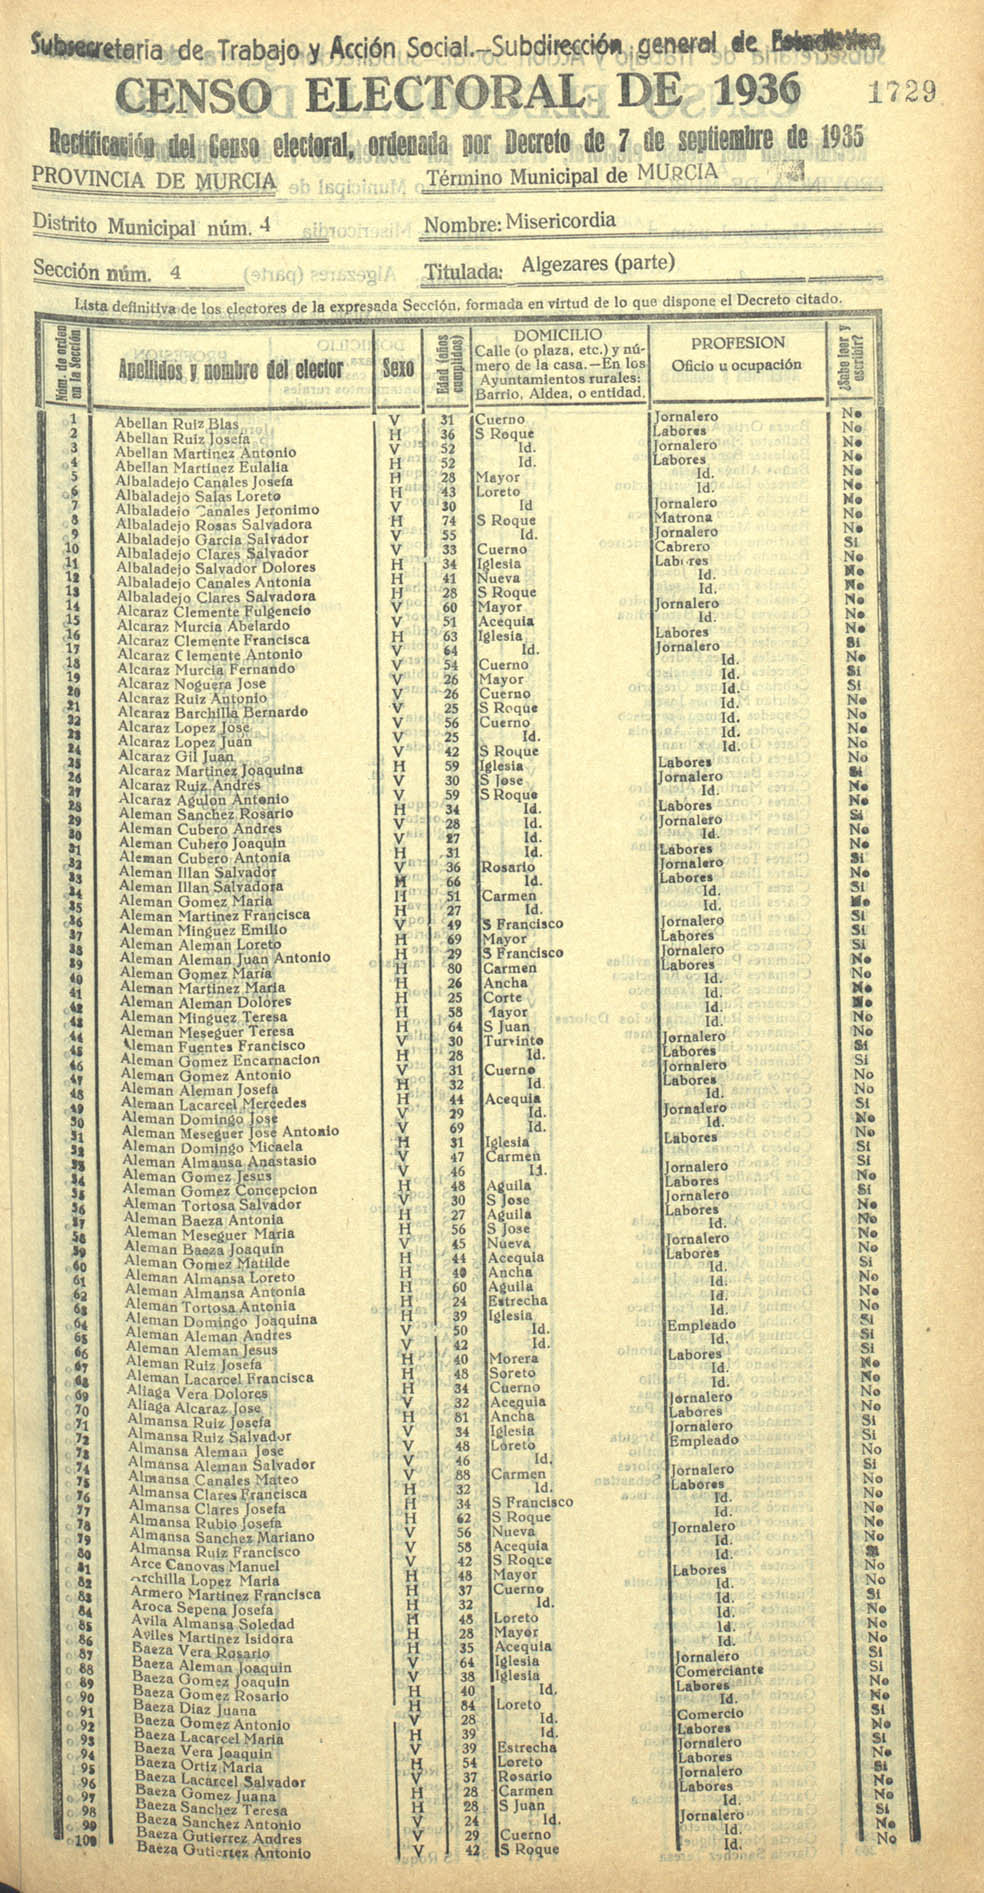 Censo electoral provincial de 1936. Murcia. Distrito 4º, Misericordia. Sección 4ª, Algezares (parte)